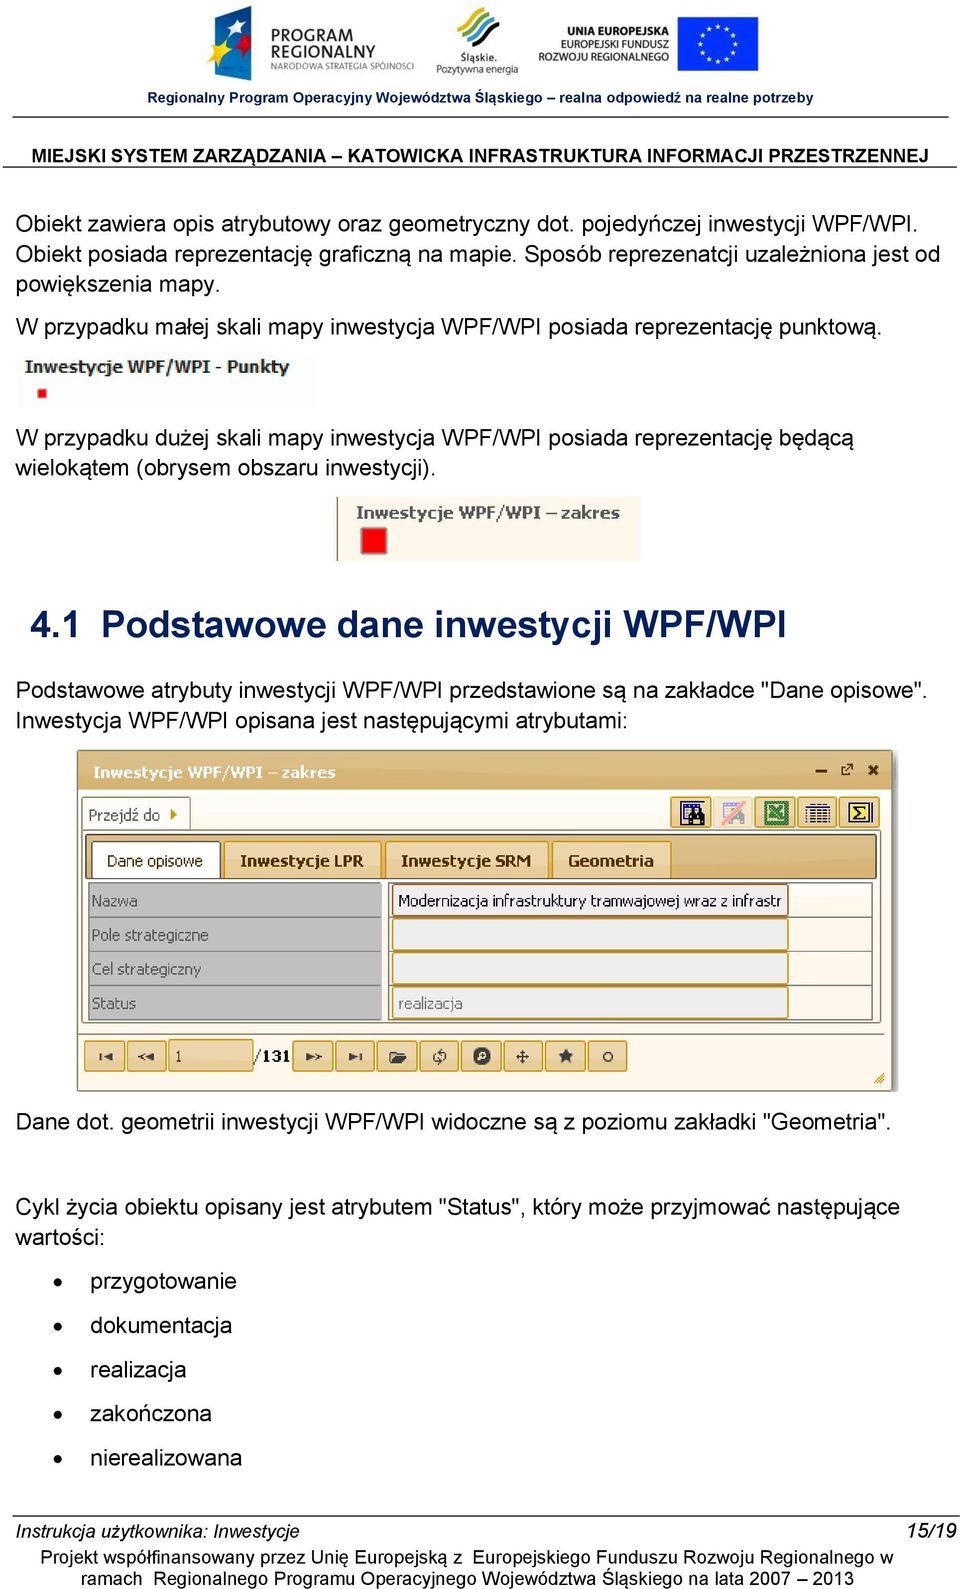 1 Podstawowe dane inwestycji WPF/WPI Podstawowe atrybuty inwestycji WPF/WPI przedstawione są na zakładce "Dane opisowe". Inwestycja WPF/WPI opisana jest następującymi atrybutami: Dane dot.